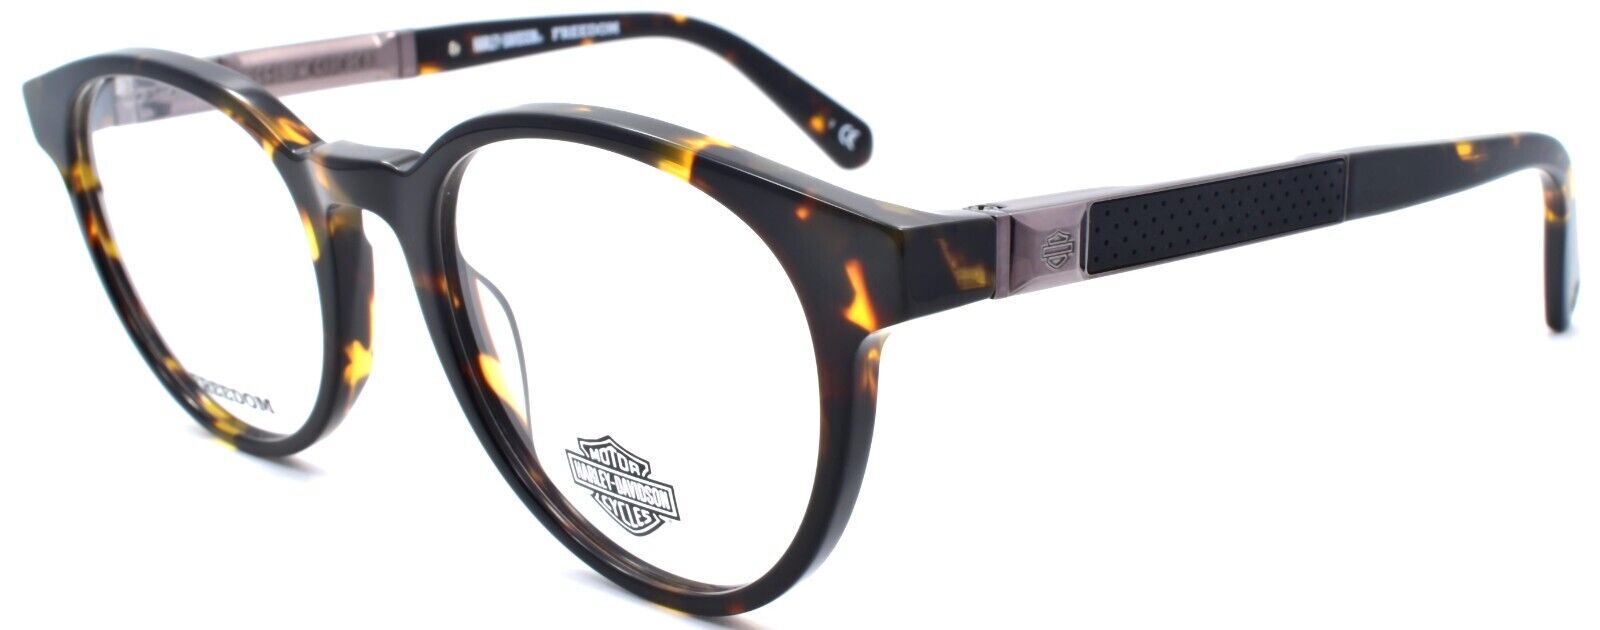 1-Harley Davidson HD9015 052 Men's Eyeglasses Frames 51-20-145 Dark Havana-889214259318-IKSpecs